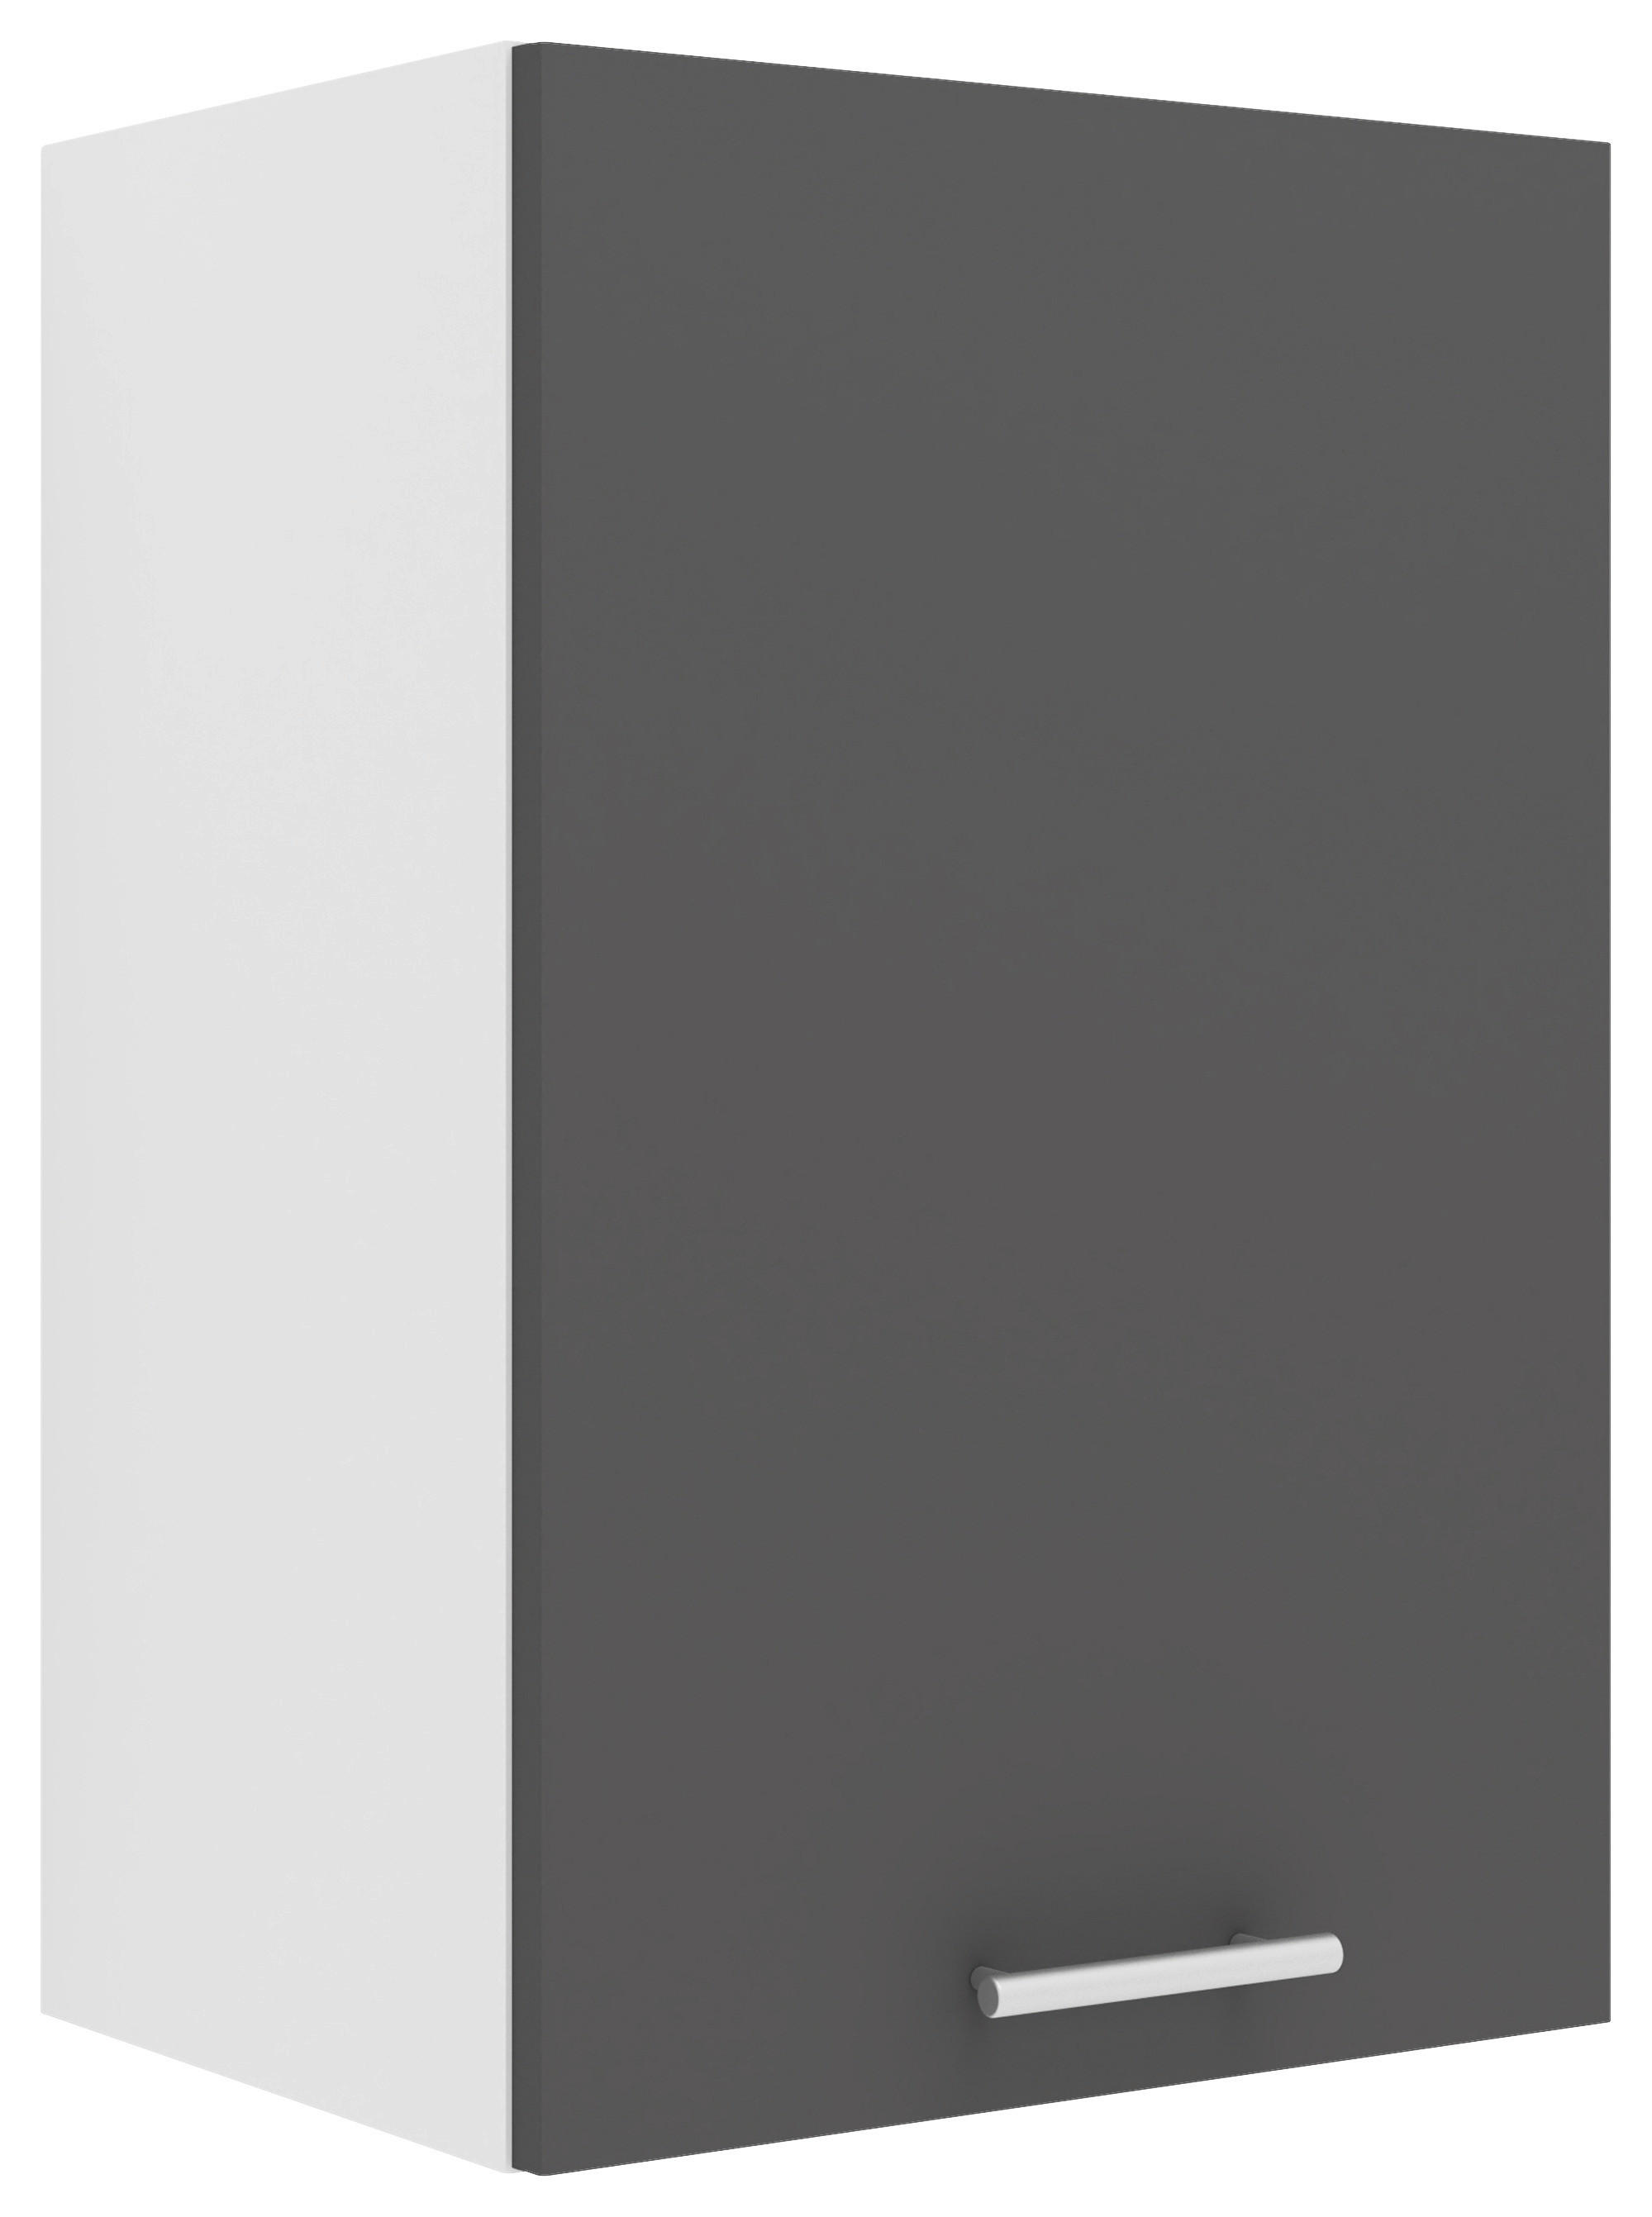 KÜCHENOBERSCHRANK 40/60/31 cm  in Weiß, Anthrazit  - Anthrazit/Alufarben, KONVENTIONELL, Holzwerkstoff/Metall (40/60/31cm) - MID.YOU